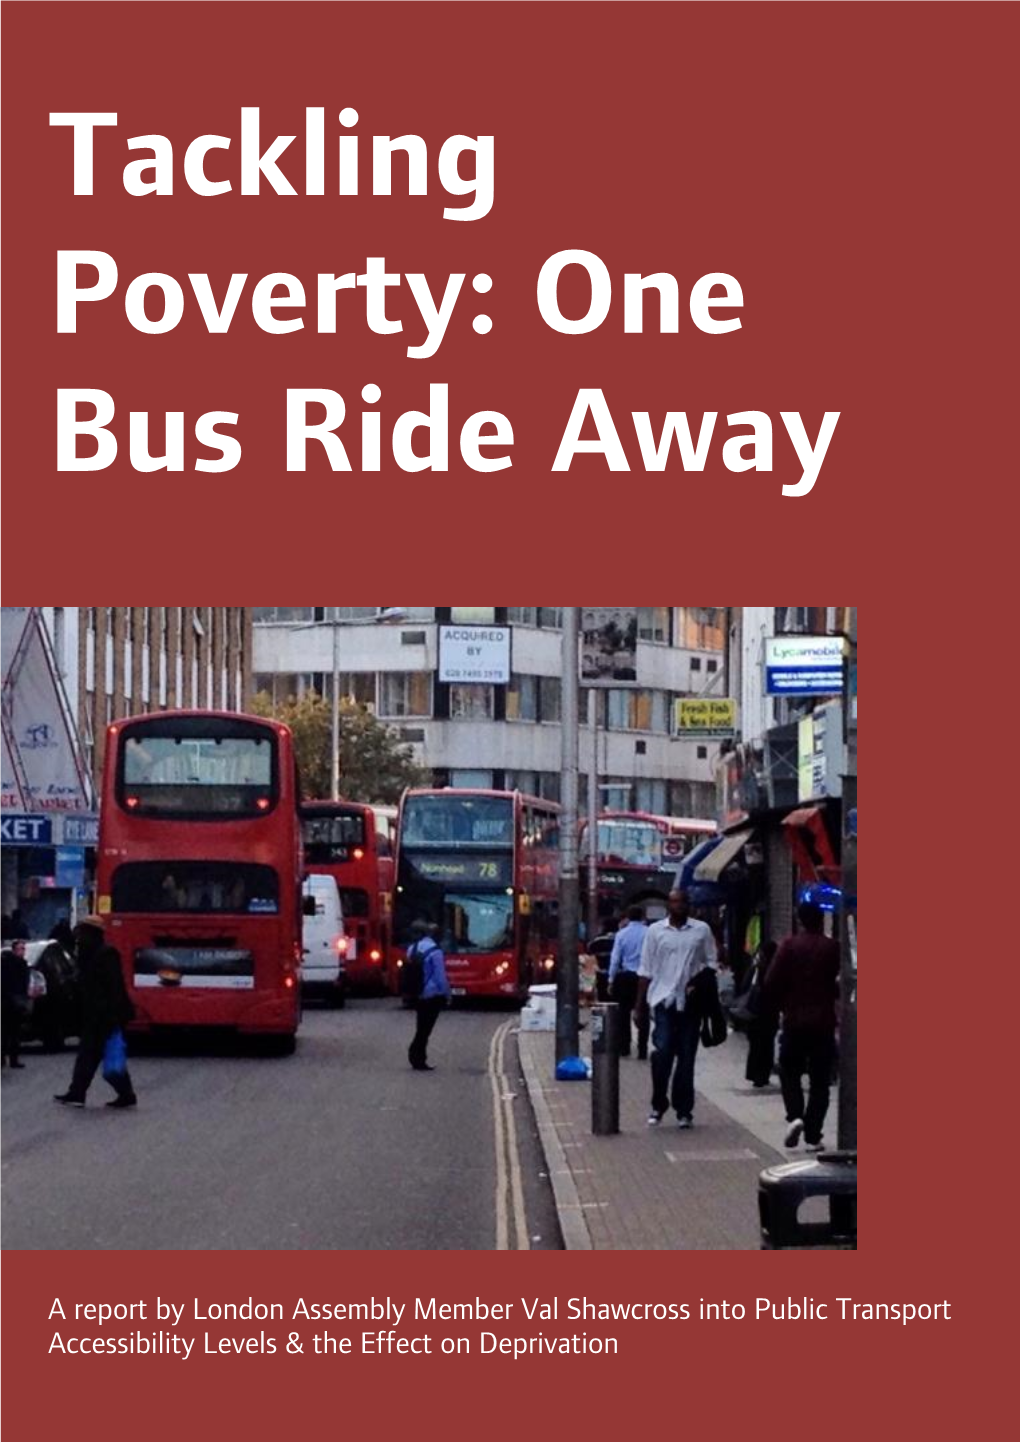 Public Transport Accessibility & Deprivation